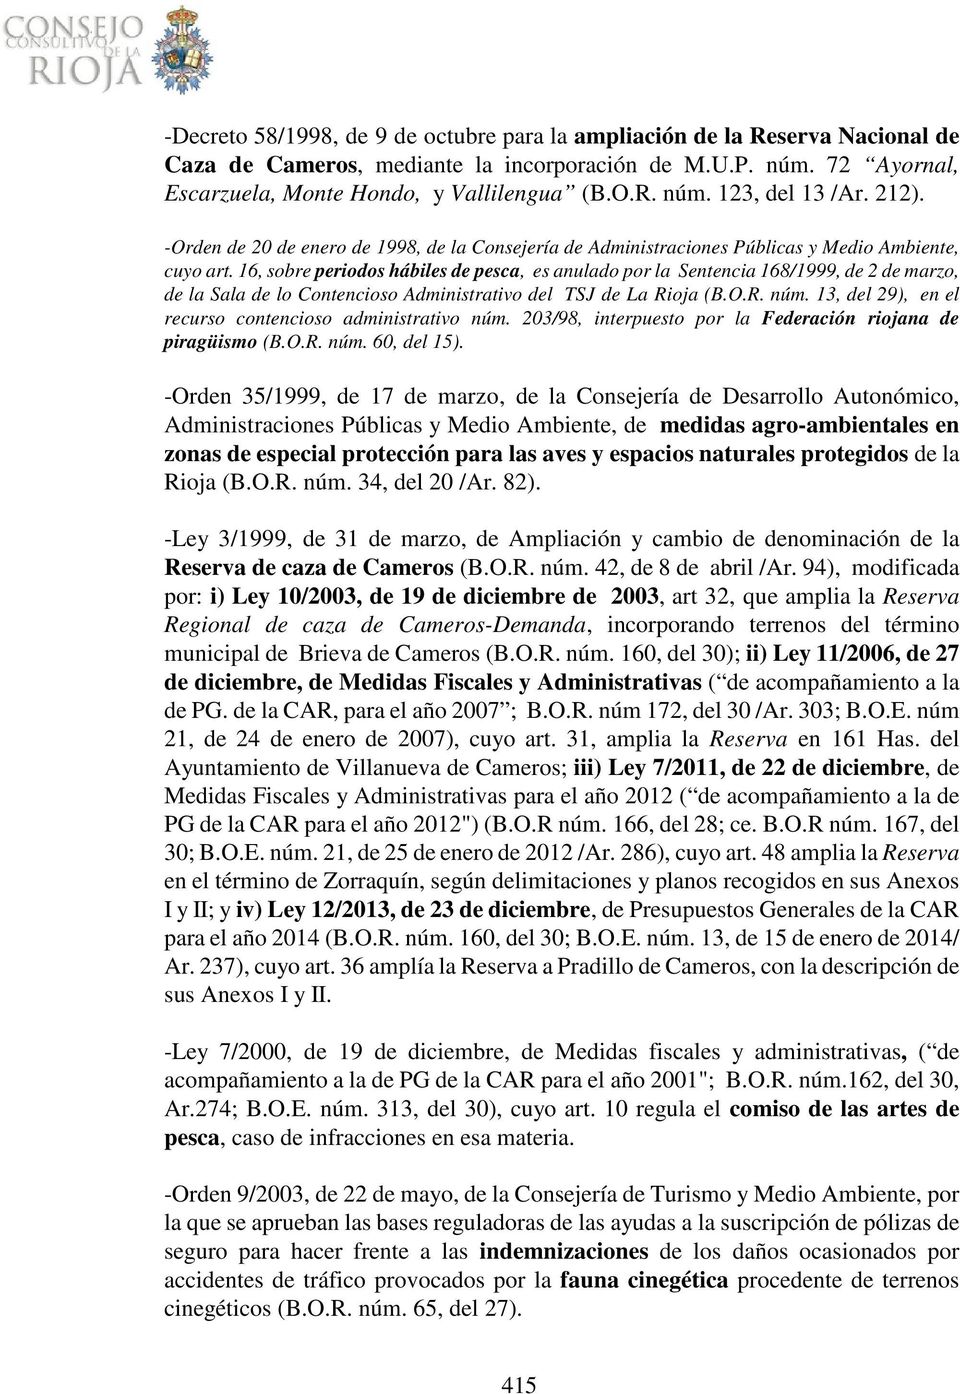 16, sobre periodos hábiles de pesca, es anulado por la Sentencia 168/1999, de 2 de marzo, de la Sala de lo Contencioso Administrativo del TSJ de La Rioja (B.O.R. núm.